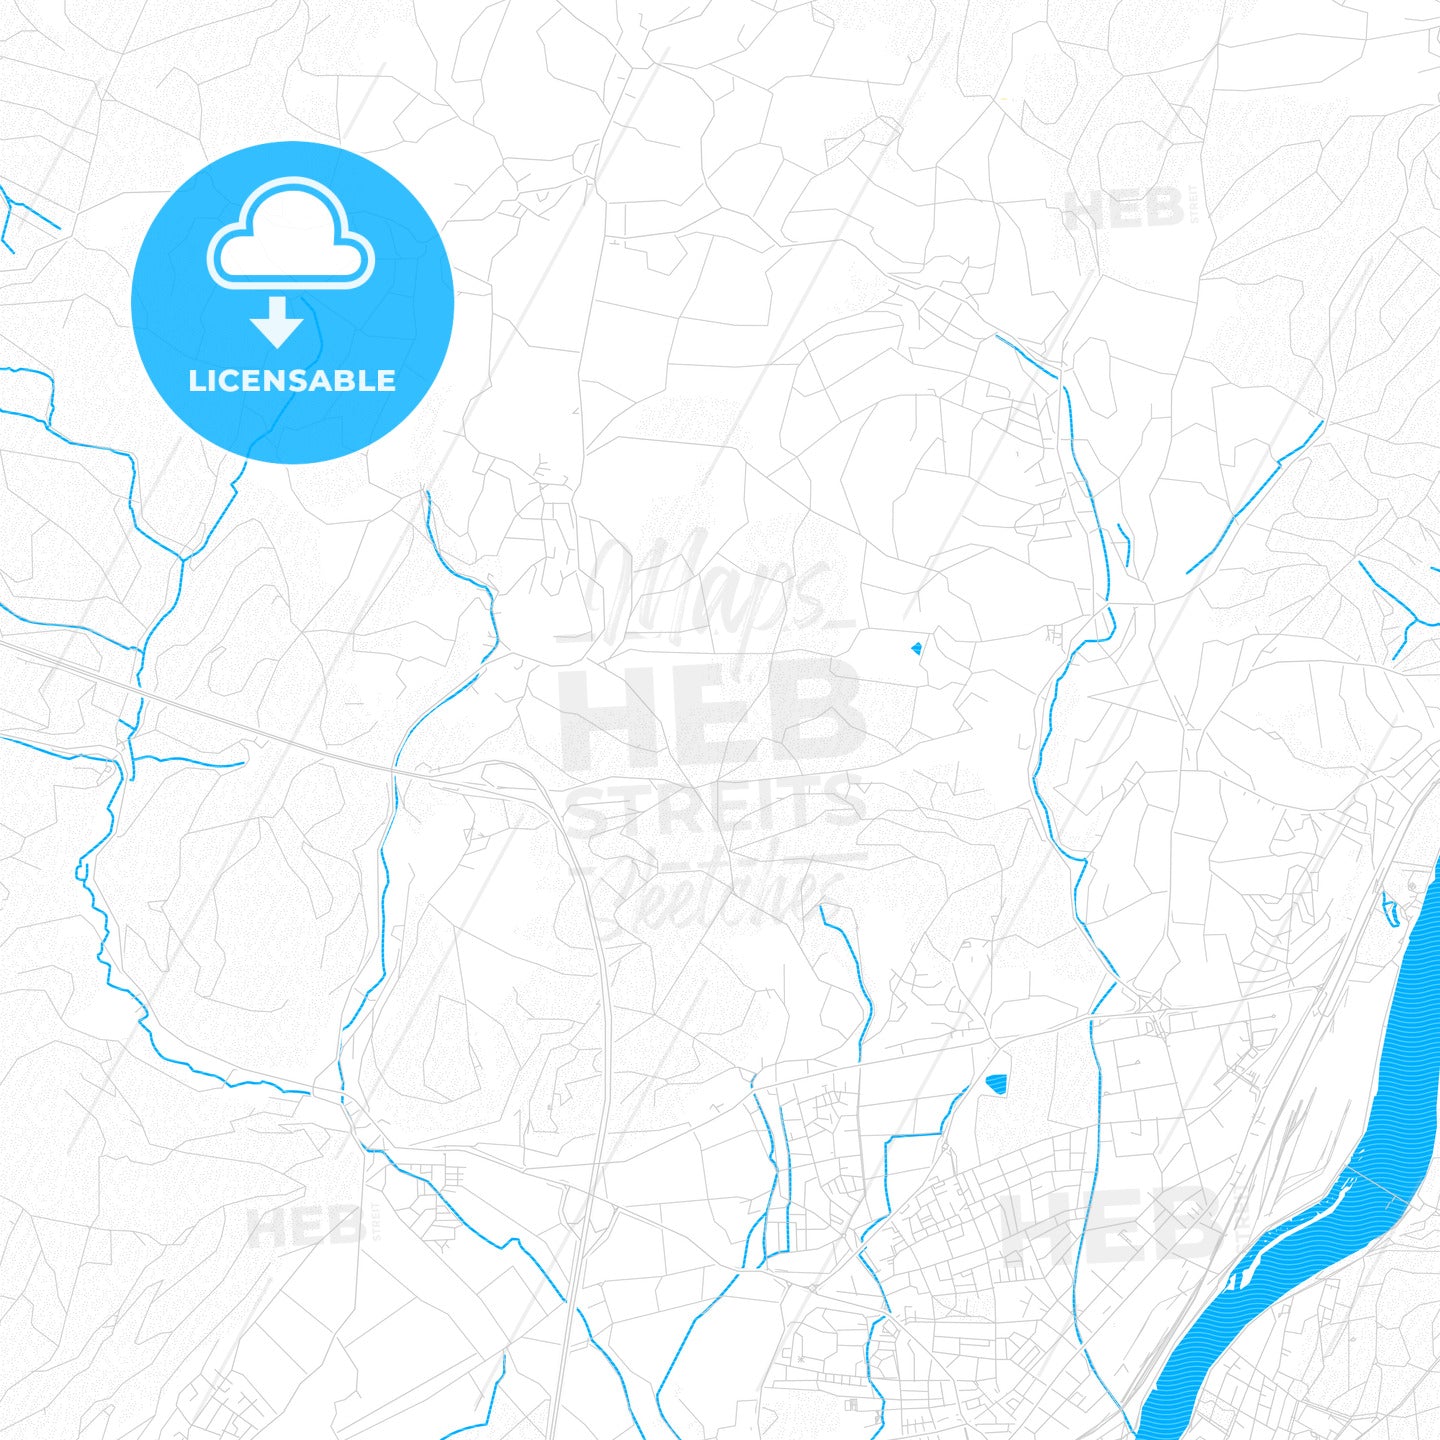 Rheinfelden (Baden), Germany PDF vector map with water in focus